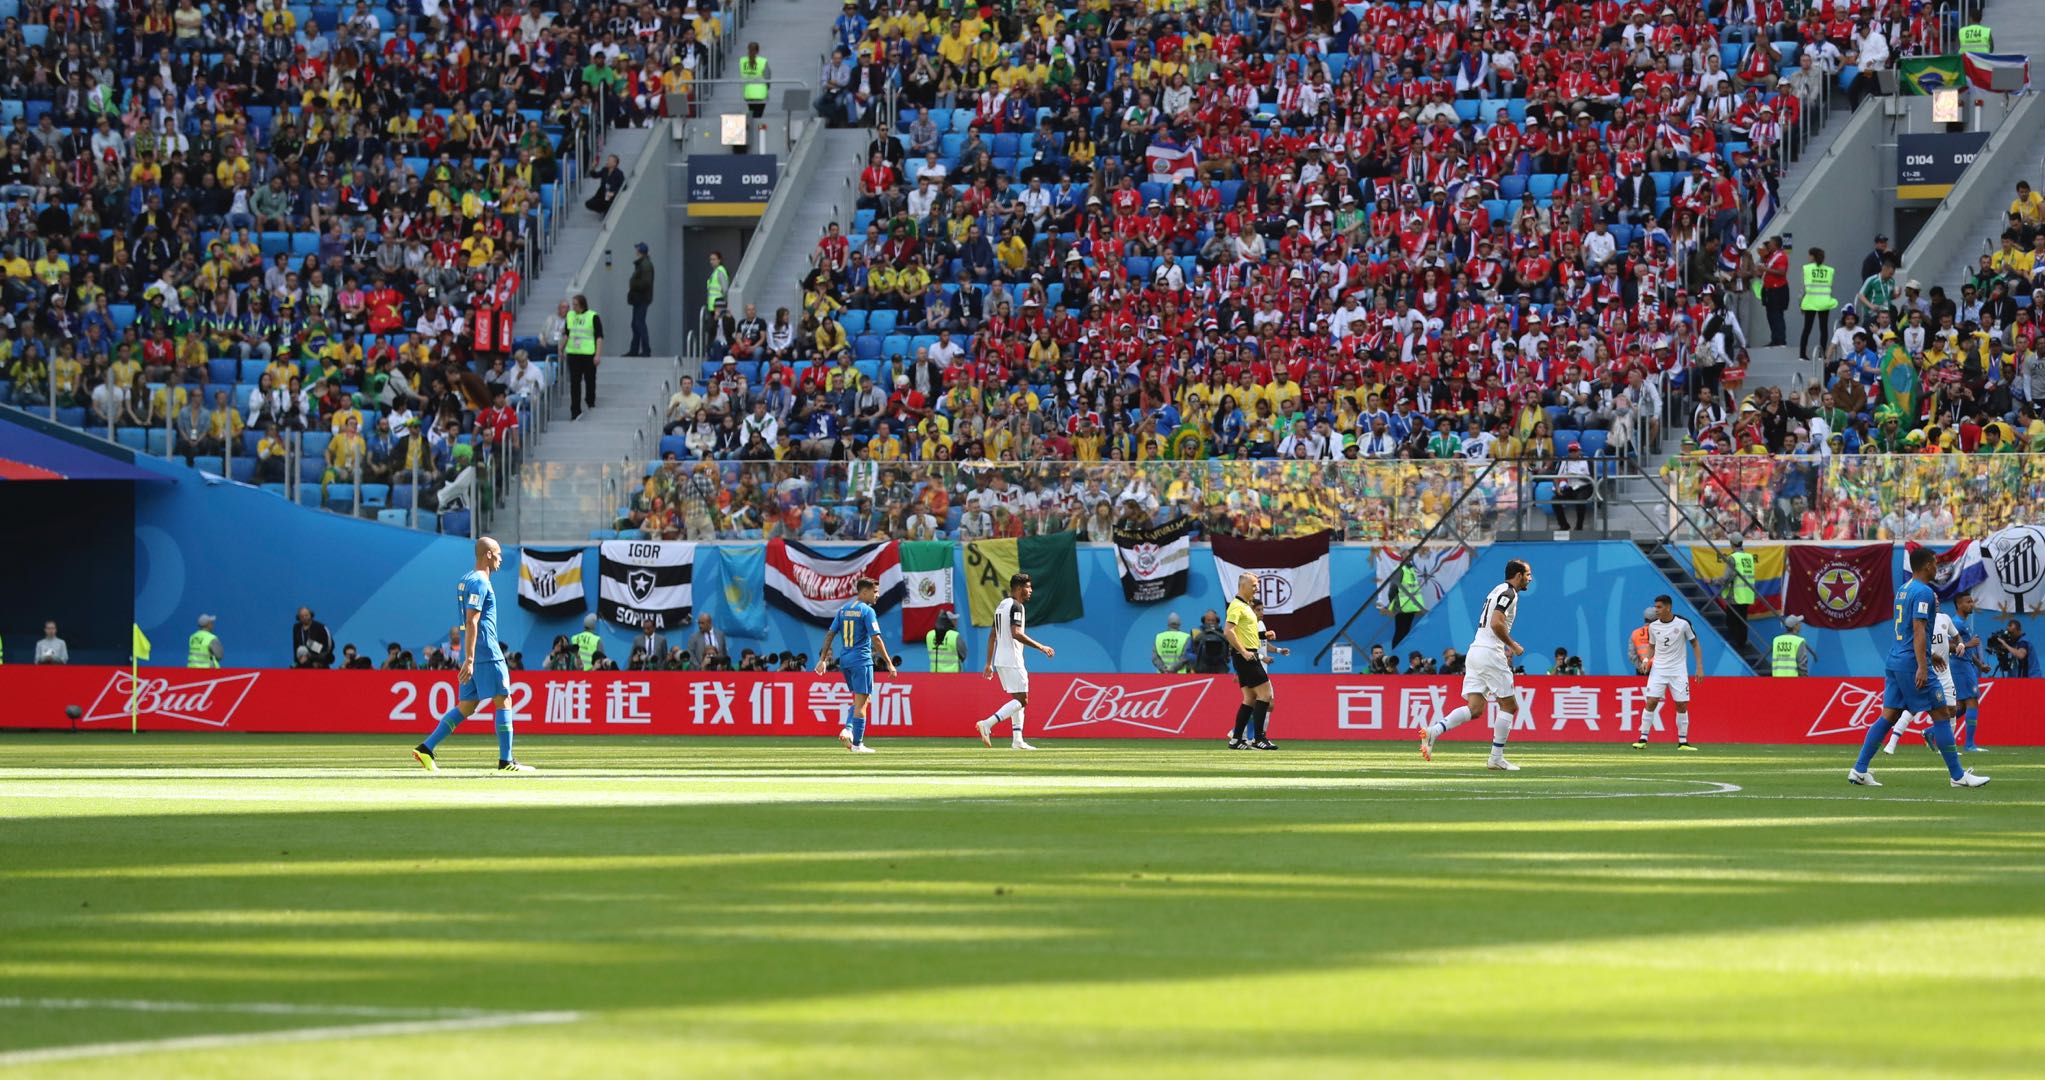 世界杯赛场中国队加油广告醒目:2022雄起,我们